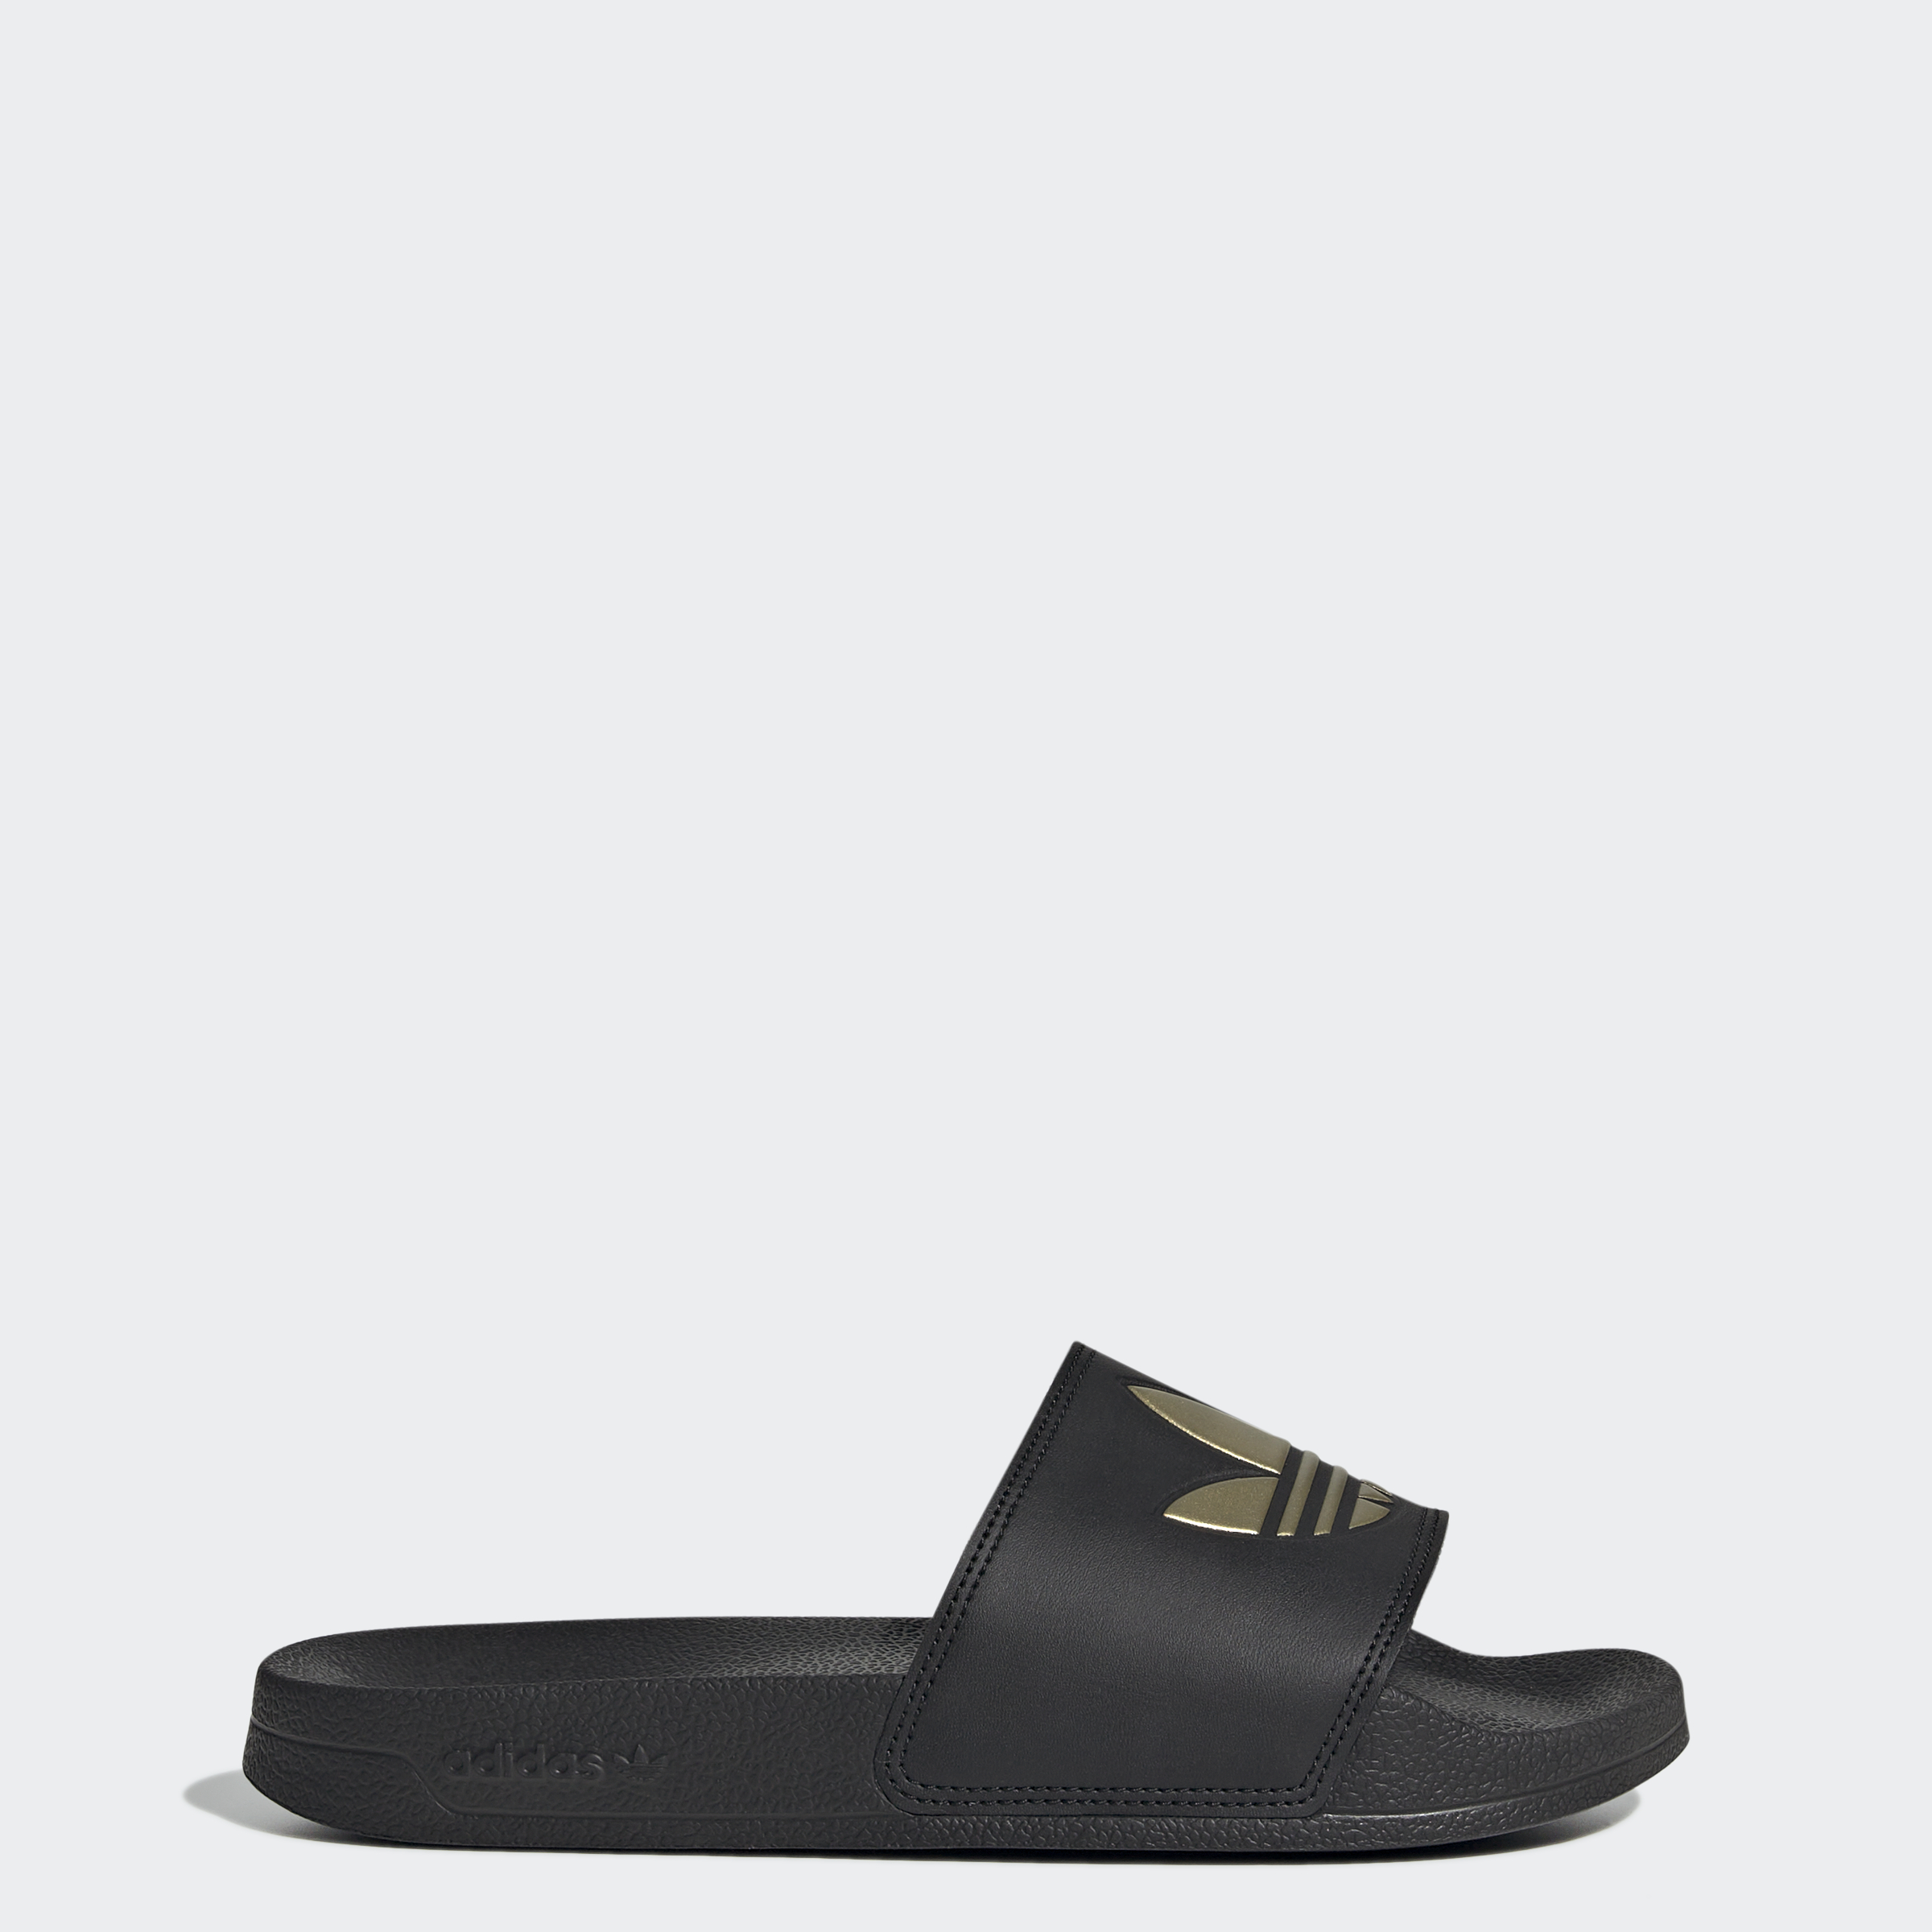 Lite Slide Sandals - Core Black Black/Matte Gold, US 10 for sale online | eBay